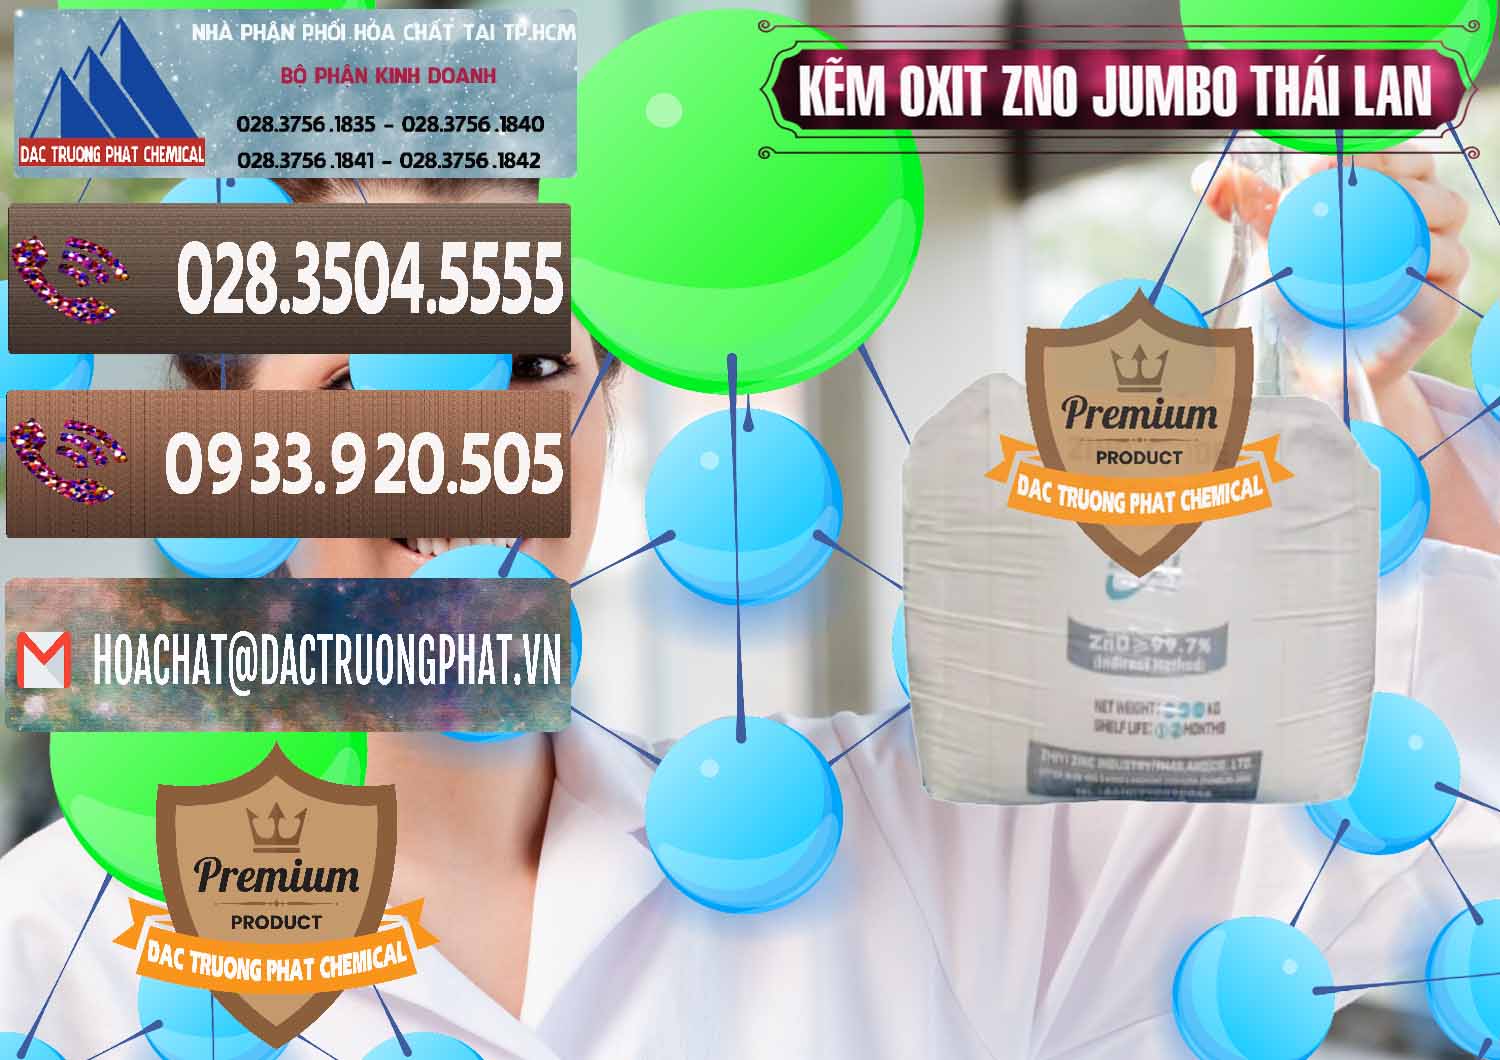 Nơi chuyên kinh doanh & bán Zinc Oxide - Bột Kẽm Oxit ZNO Jumbo Bành Thái Lan Thailand - 0370 - Công ty phân phối & cung cấp hóa chất tại TP.HCM - hoachatviet.net